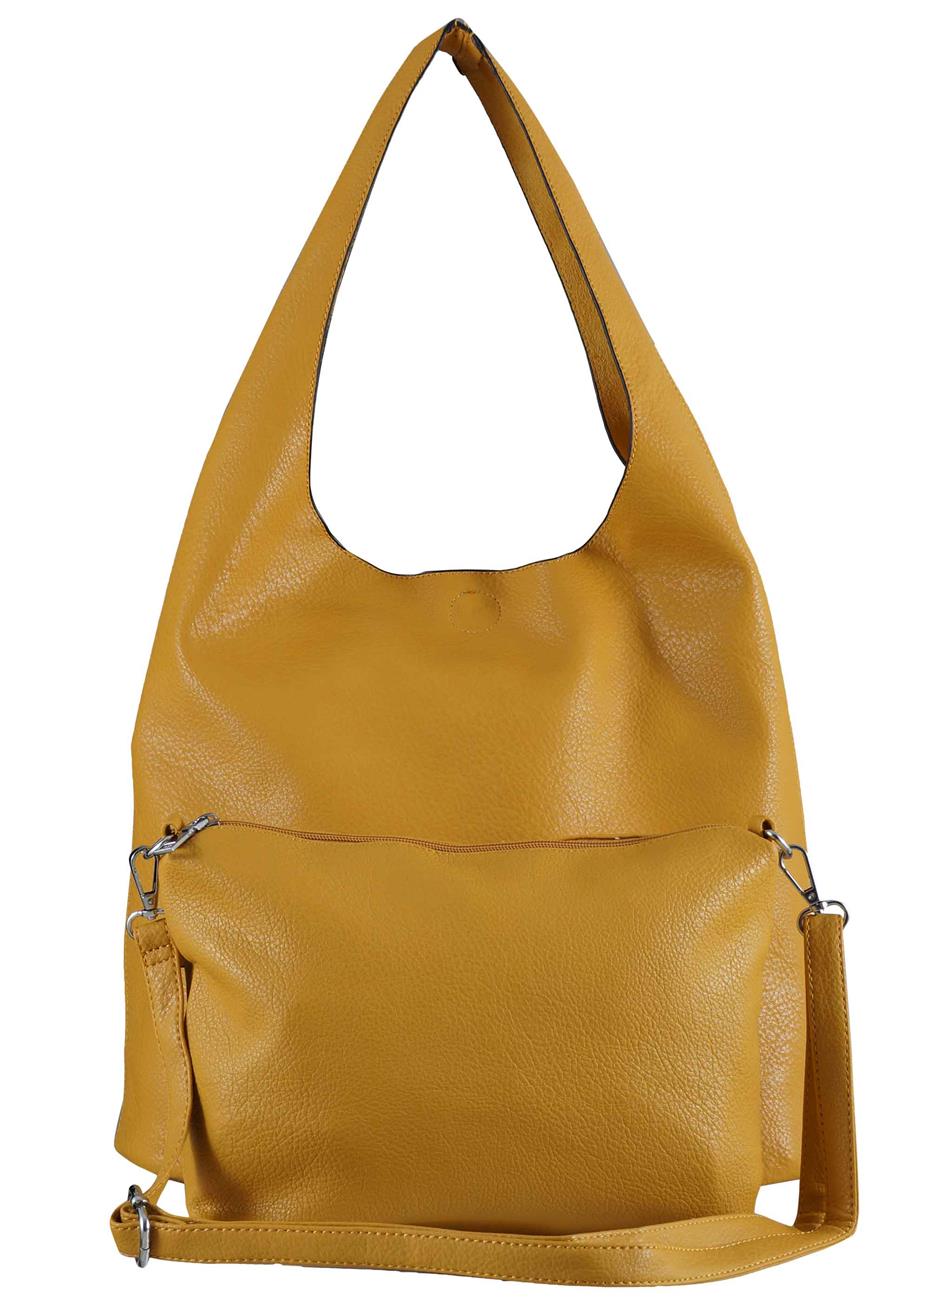 Γυναικεία τσάντα ώμου δερματίνη.περιλαμβάνει messenger bag.boho style.